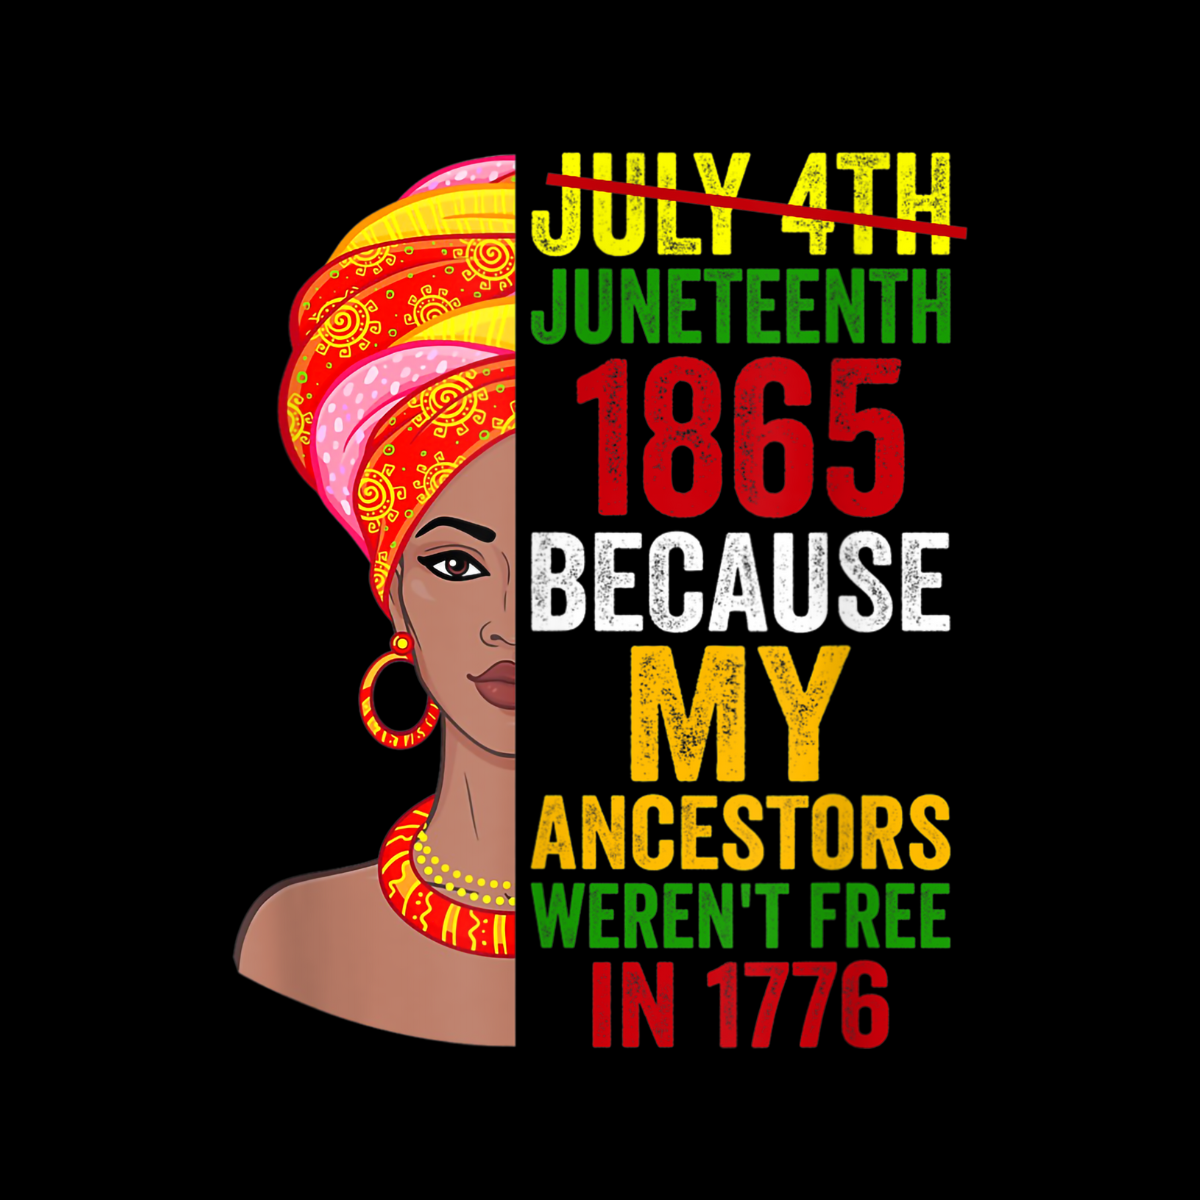 Juneteenth Queen 1865 Ancestors weren't Free in 1776